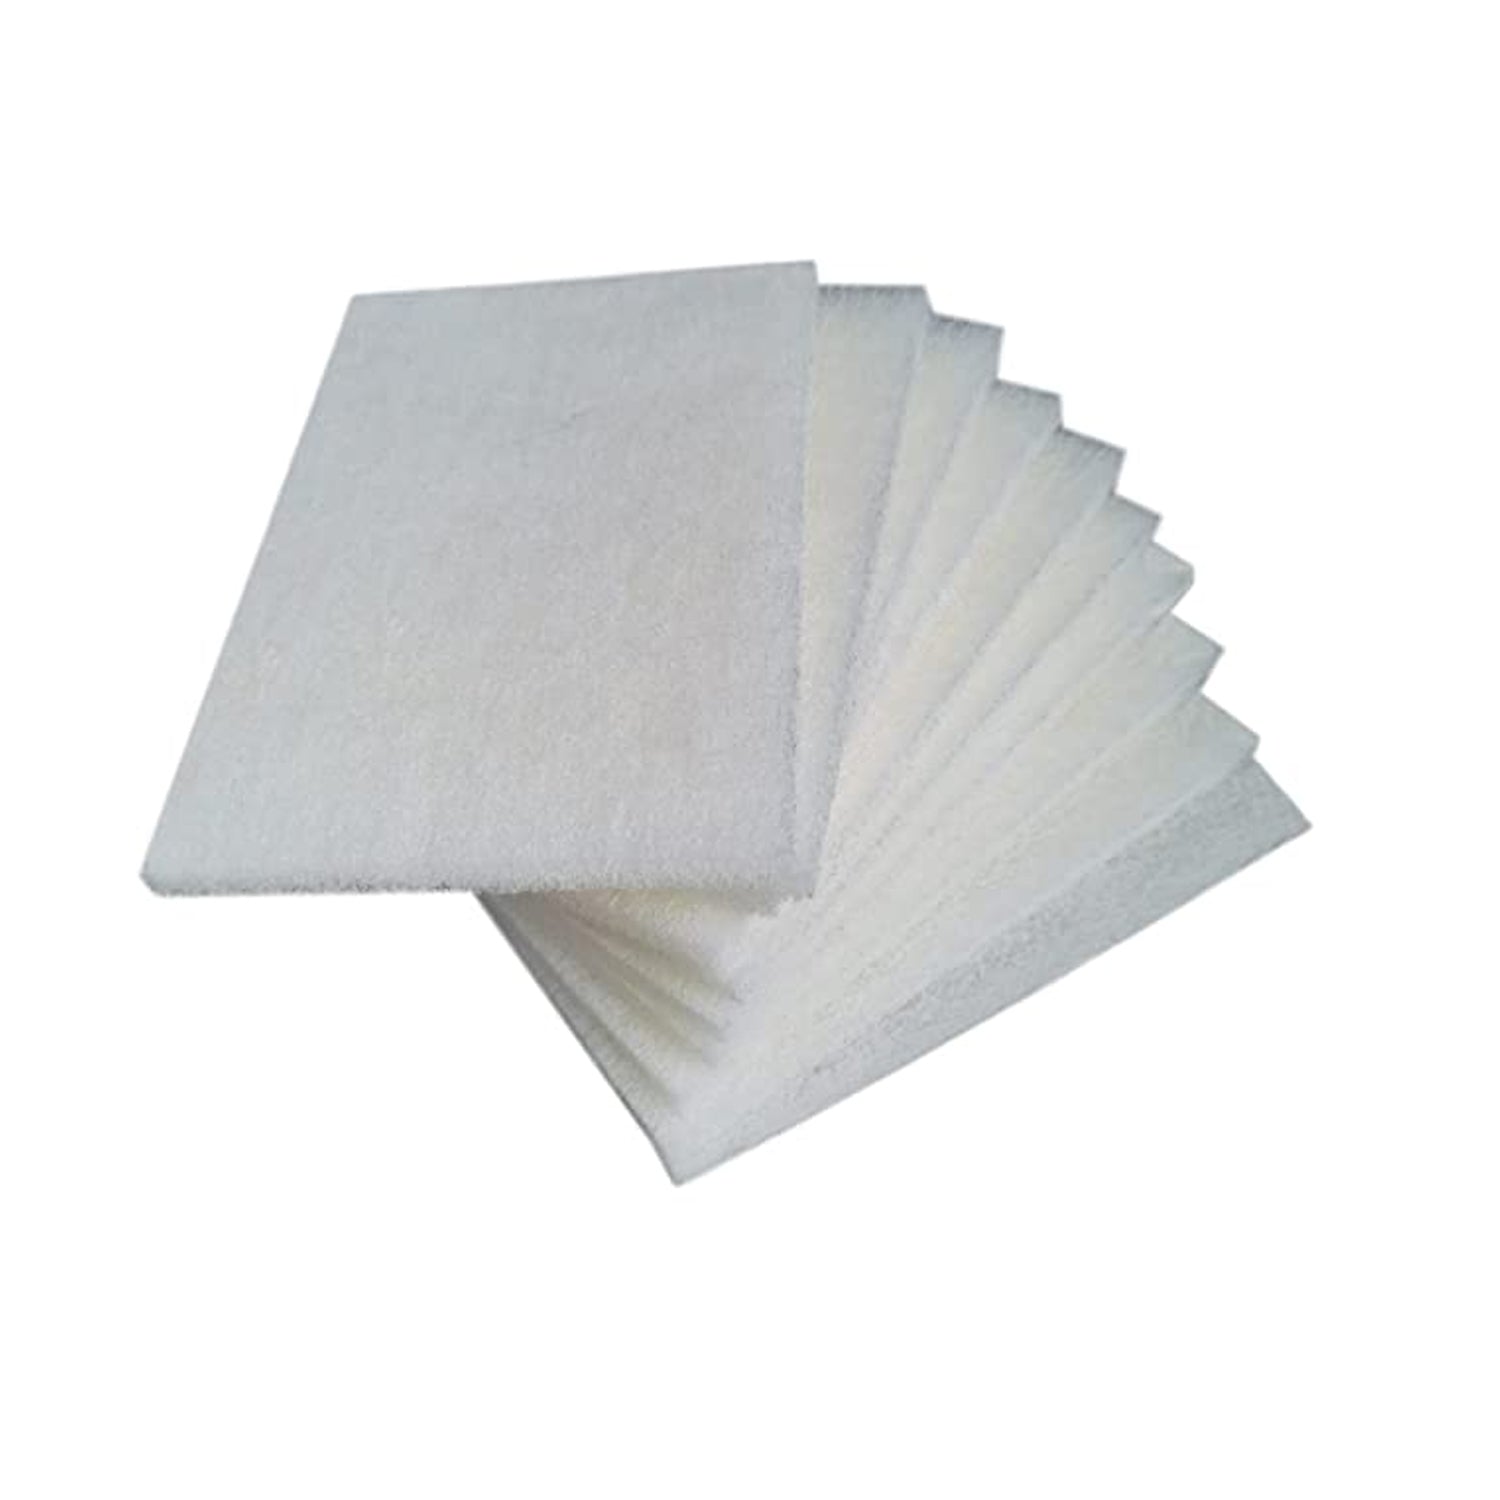 white-scuff-pad-scrubbers-10-pack